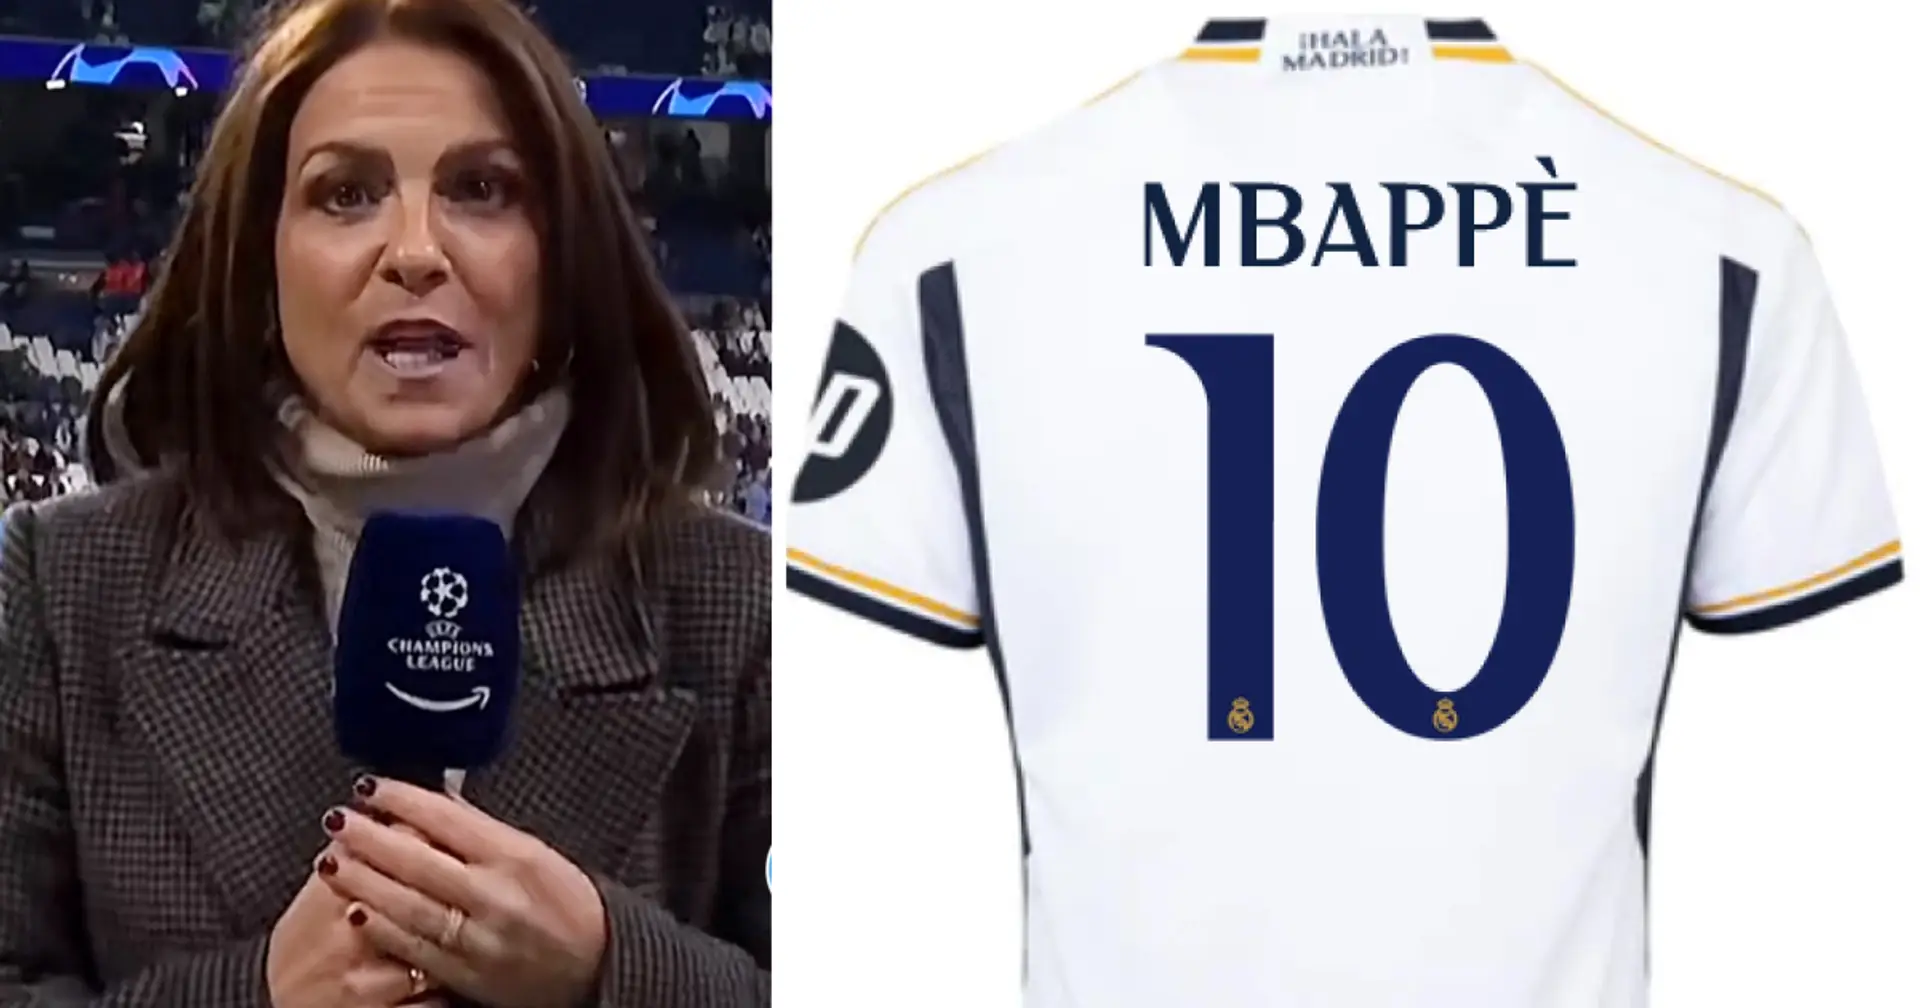 "J'ai fait semblant": une journaliste révèle ce qu'on lui a dit dans un magasin du Real Madrid après avoir demandé le maillot de Mbappé